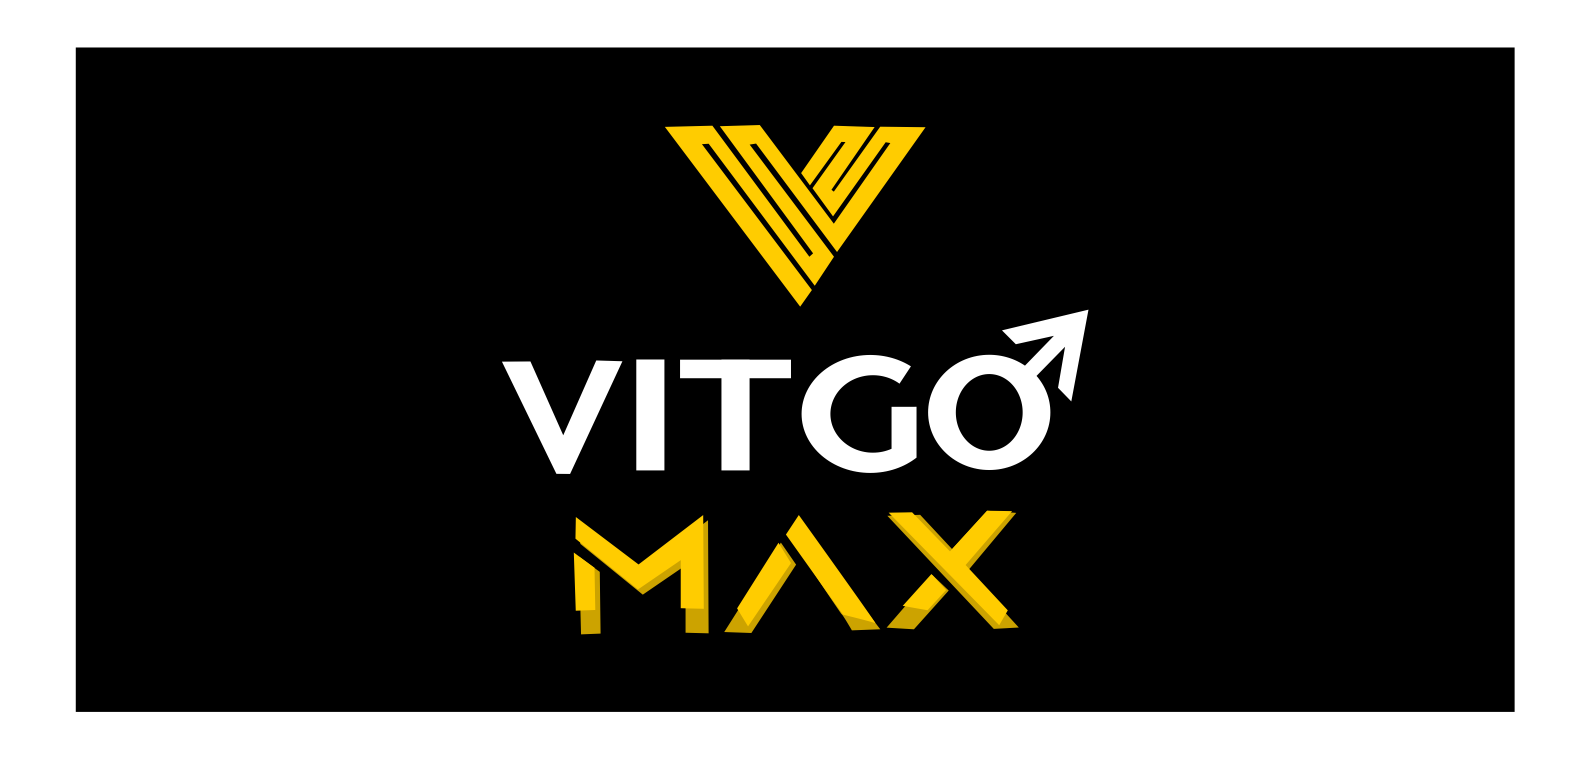 Vitgo Maxx